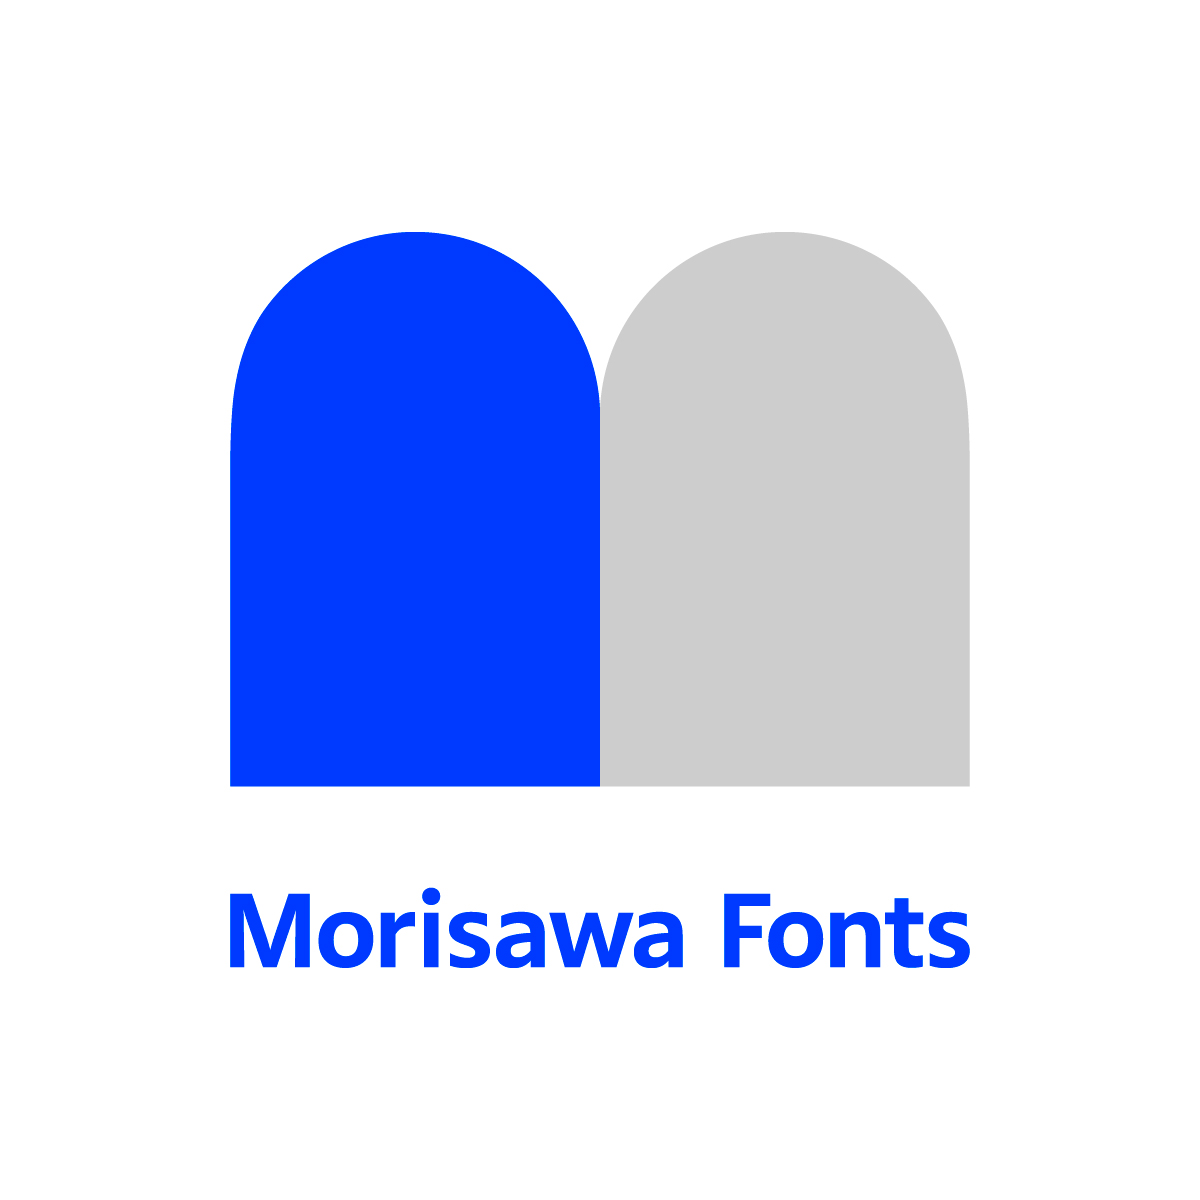 Morisawa Fonts ロゴ3 カラー